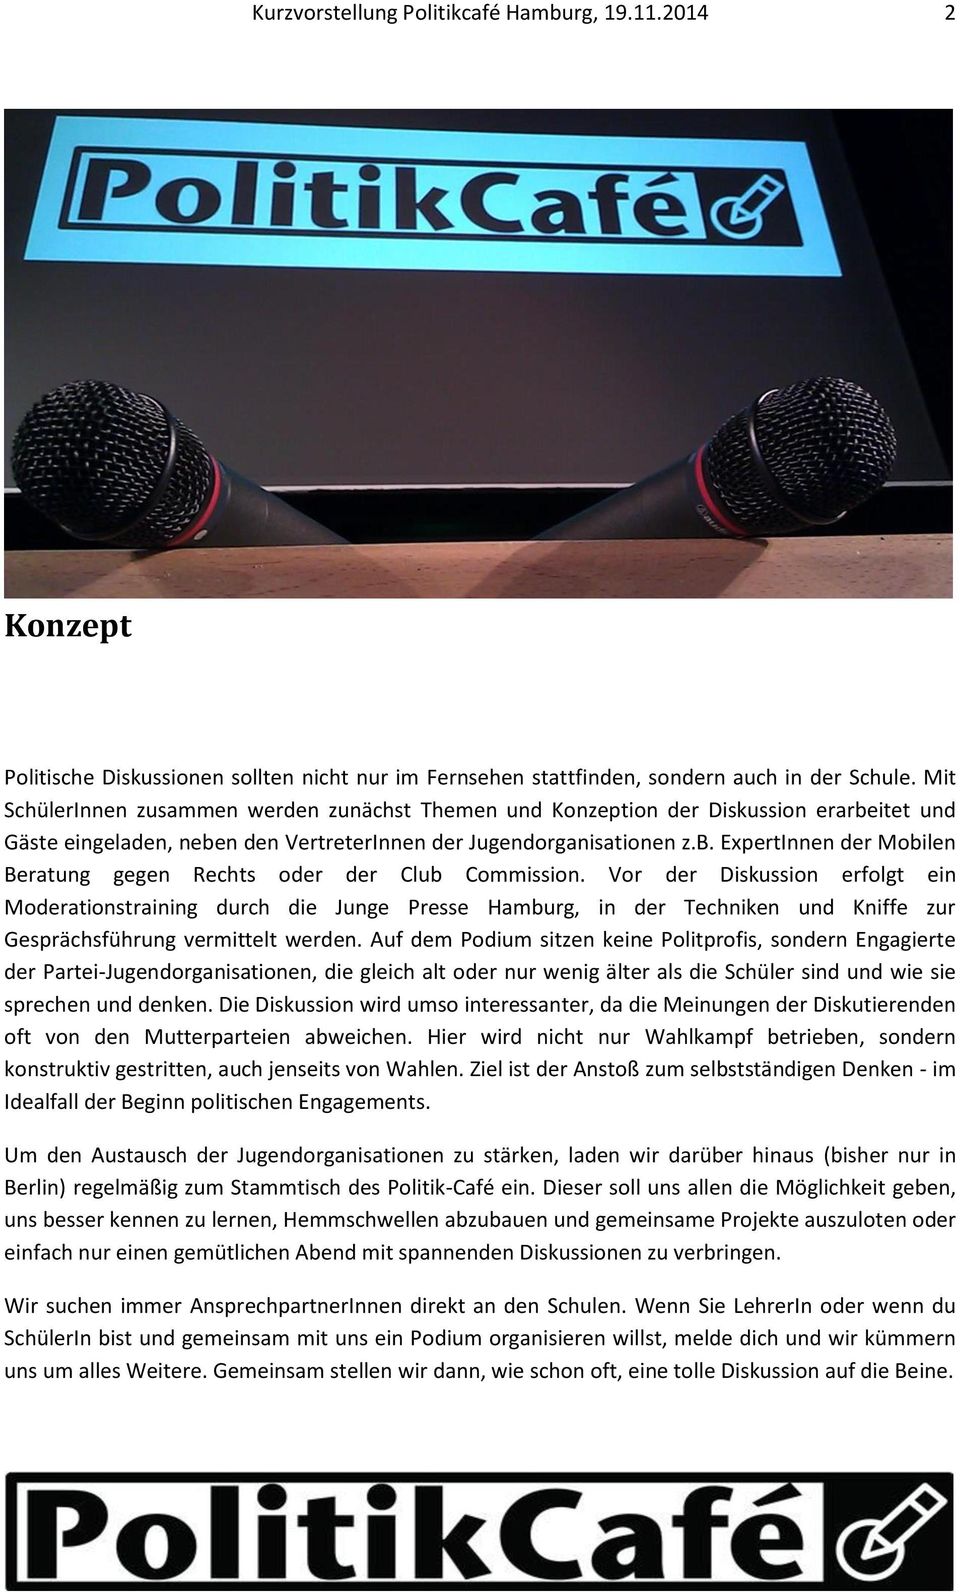 Vor der Diskussion erfolgt ein Moderationstraining durch die Junge Presse Hamburg, in der Techniken und Kniffe zur Gesprächsführung vermittelt werden.